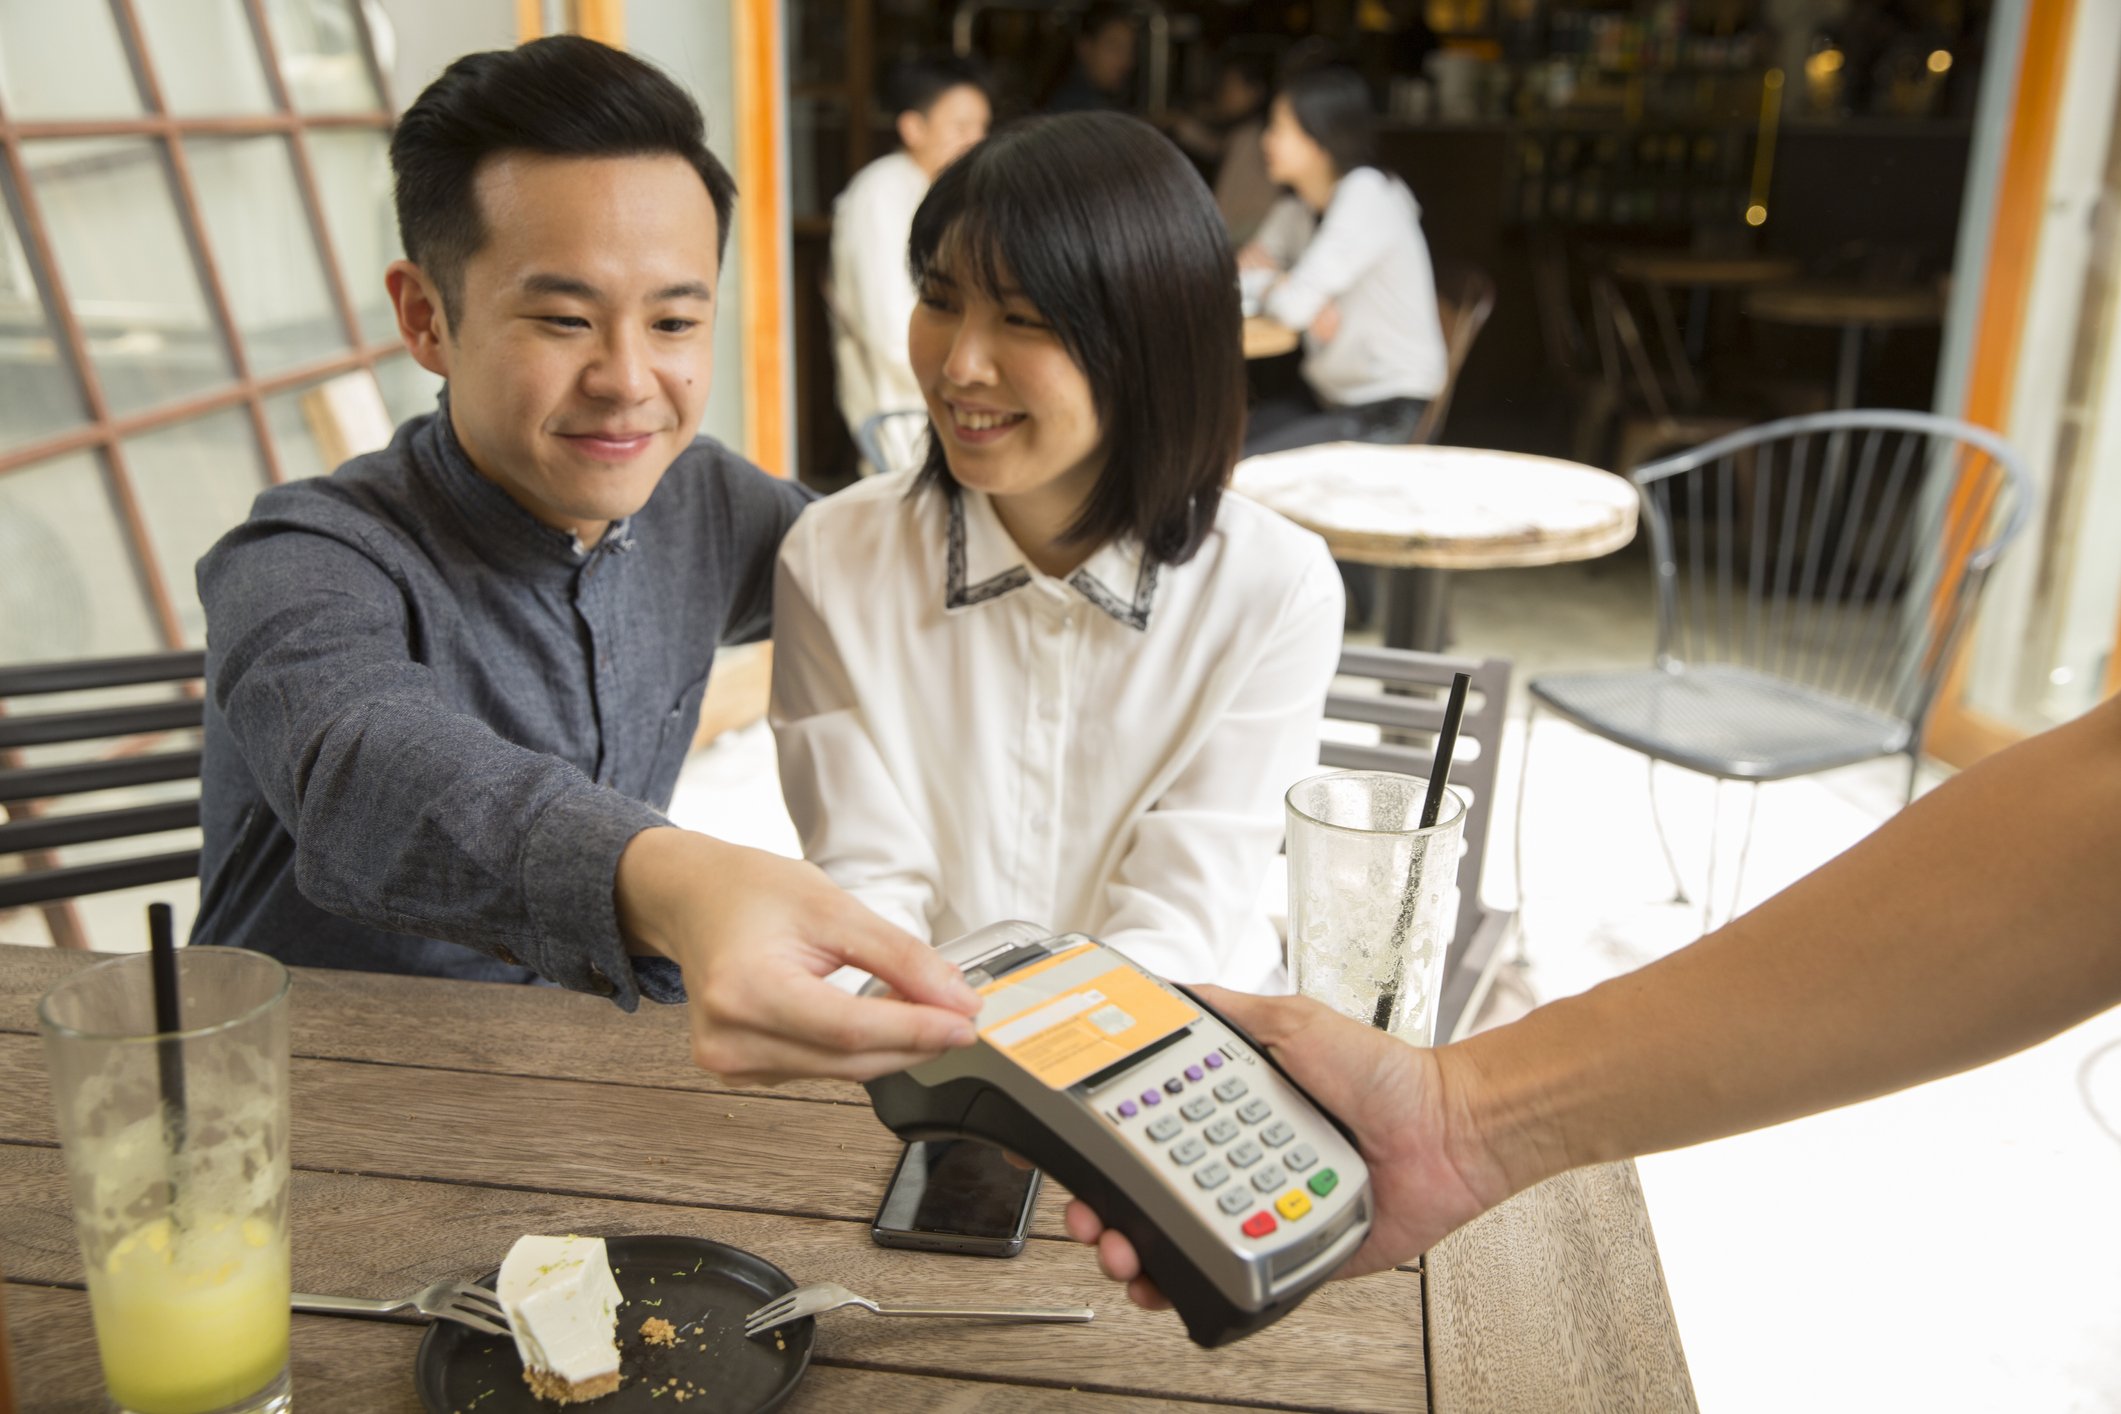 Kunde im Restaurant zahlt Rechnung mit Kreditkarte I Quelle: Getty Images